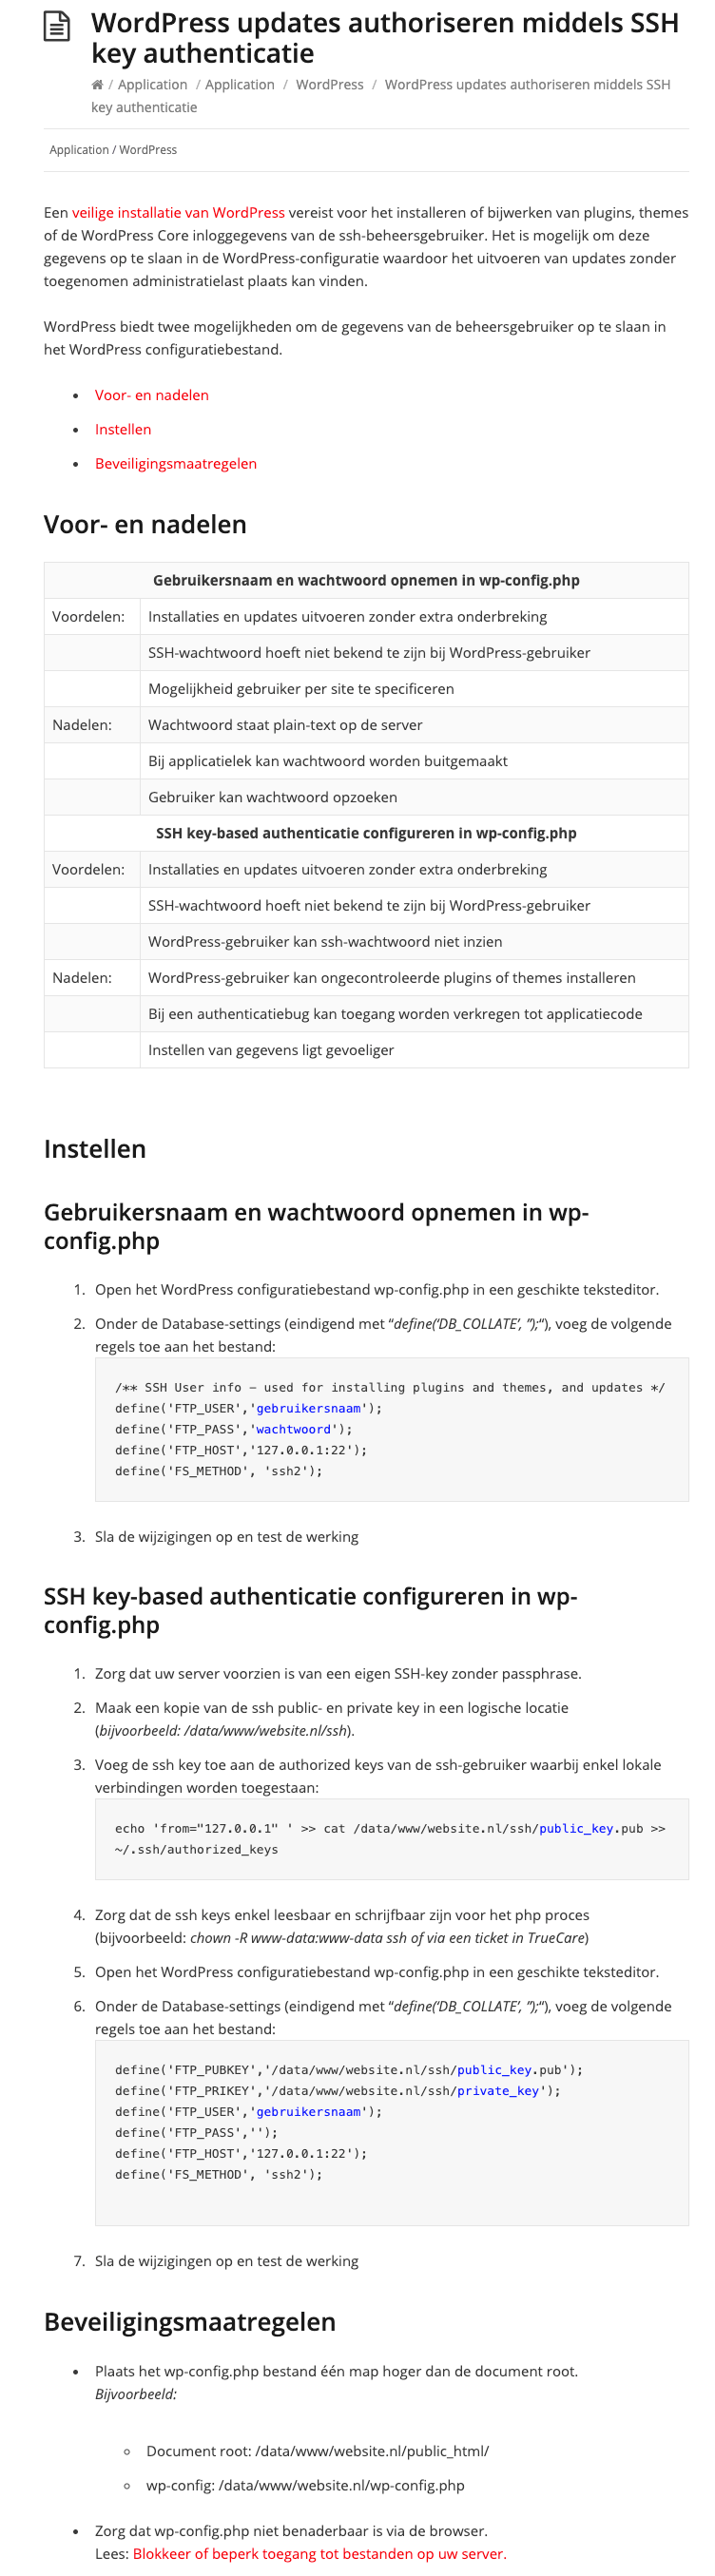 Wordpress en SSH key authenticatie op manual.true.nl